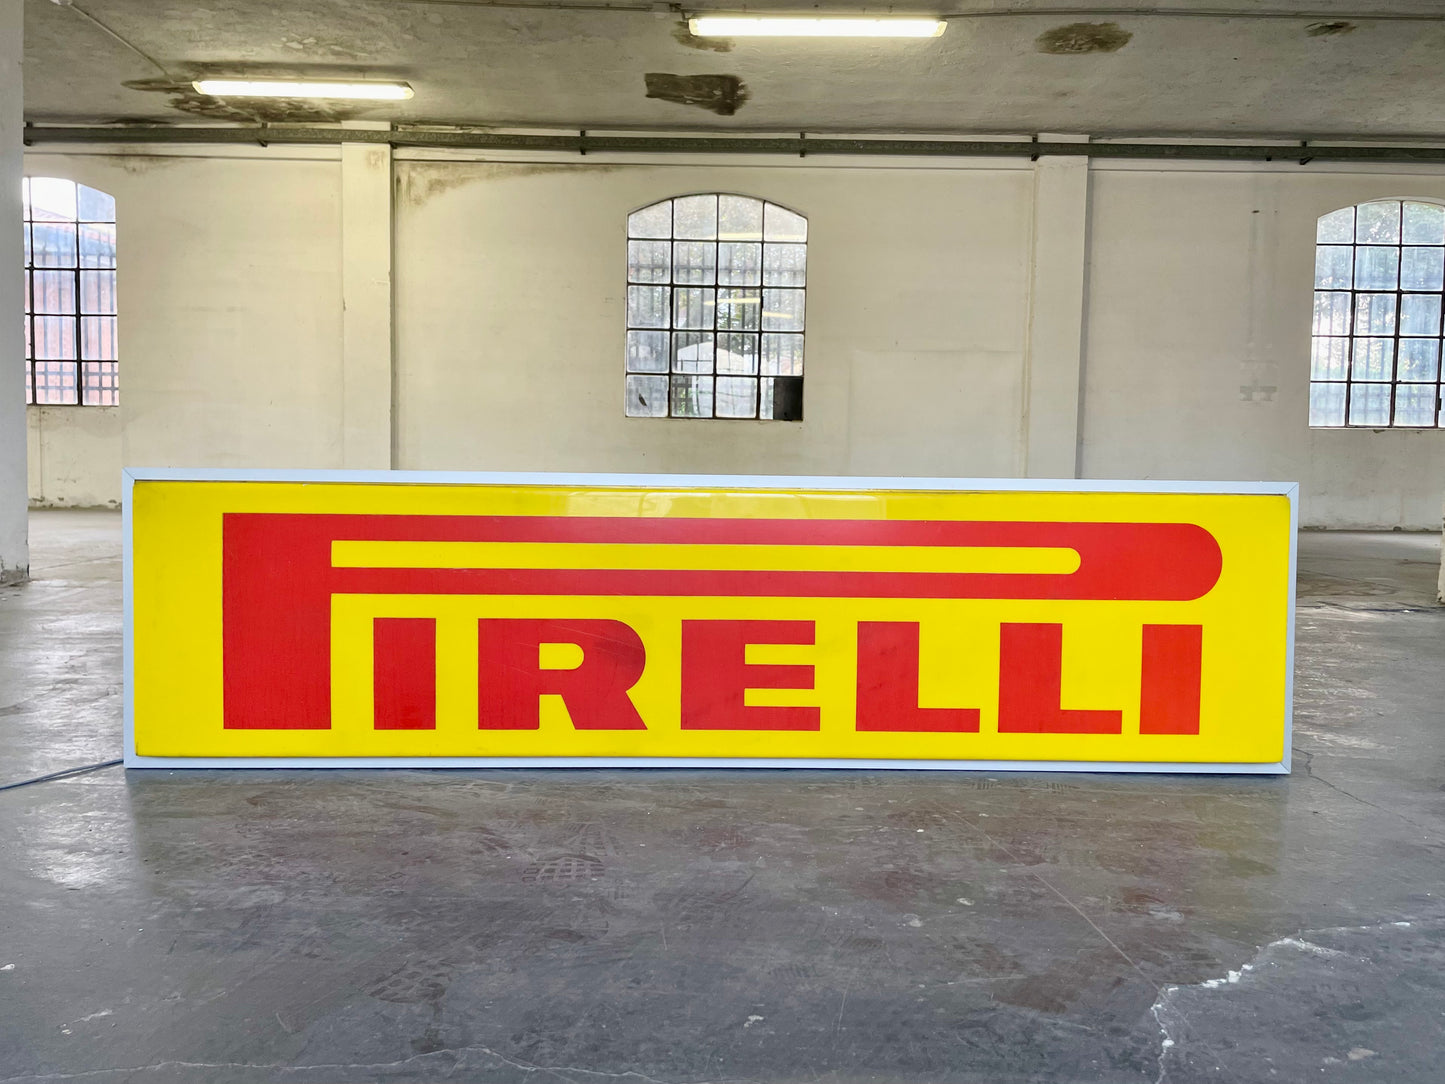 Insegna luminosa Pirelli